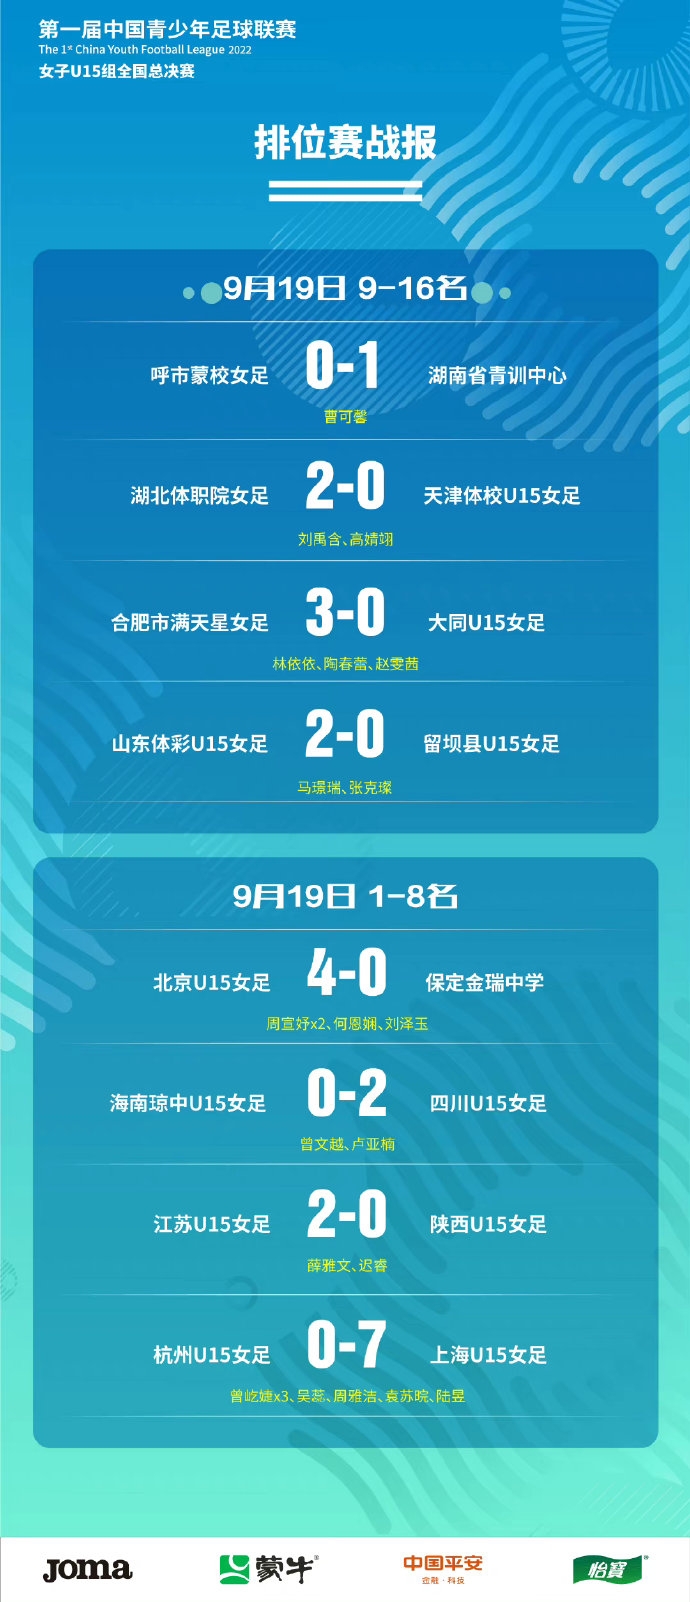 第一届中国青少年足球联赛(女子U15组全国总决赛) 排位赛战报